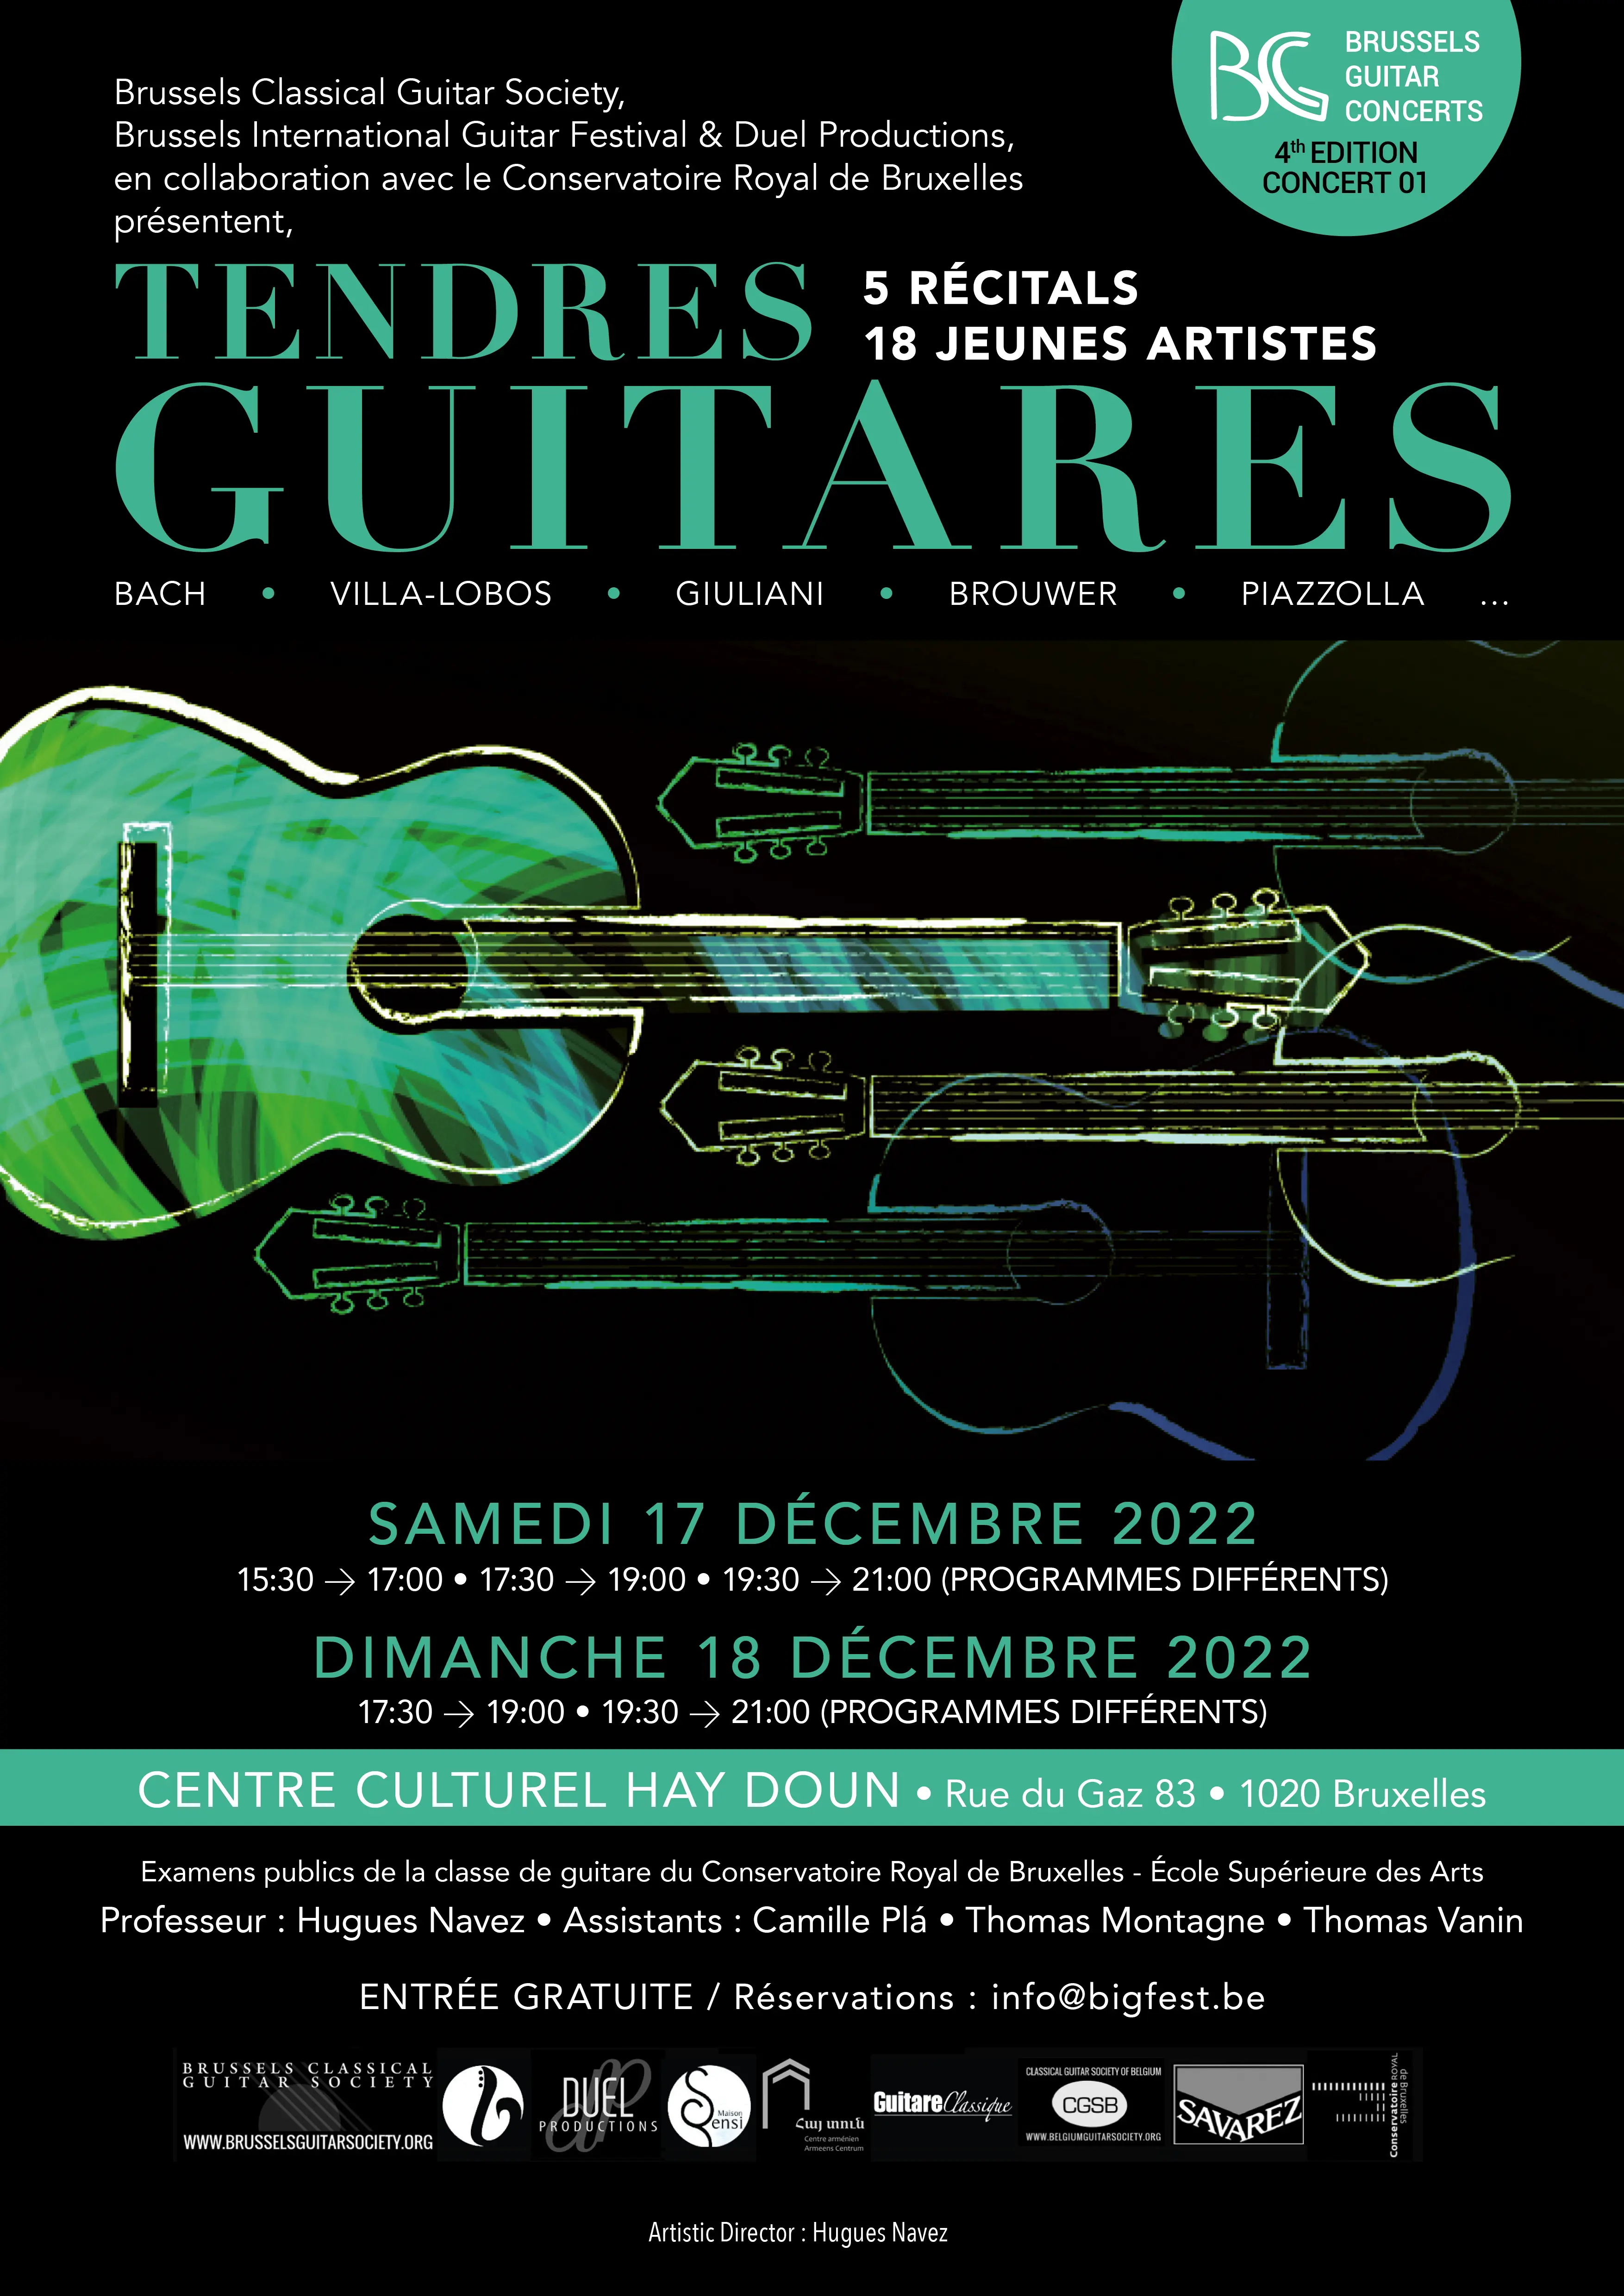 5 récitals- 18 jeunes artistes - Tendres Guitares - Brussels Guitar Concerts